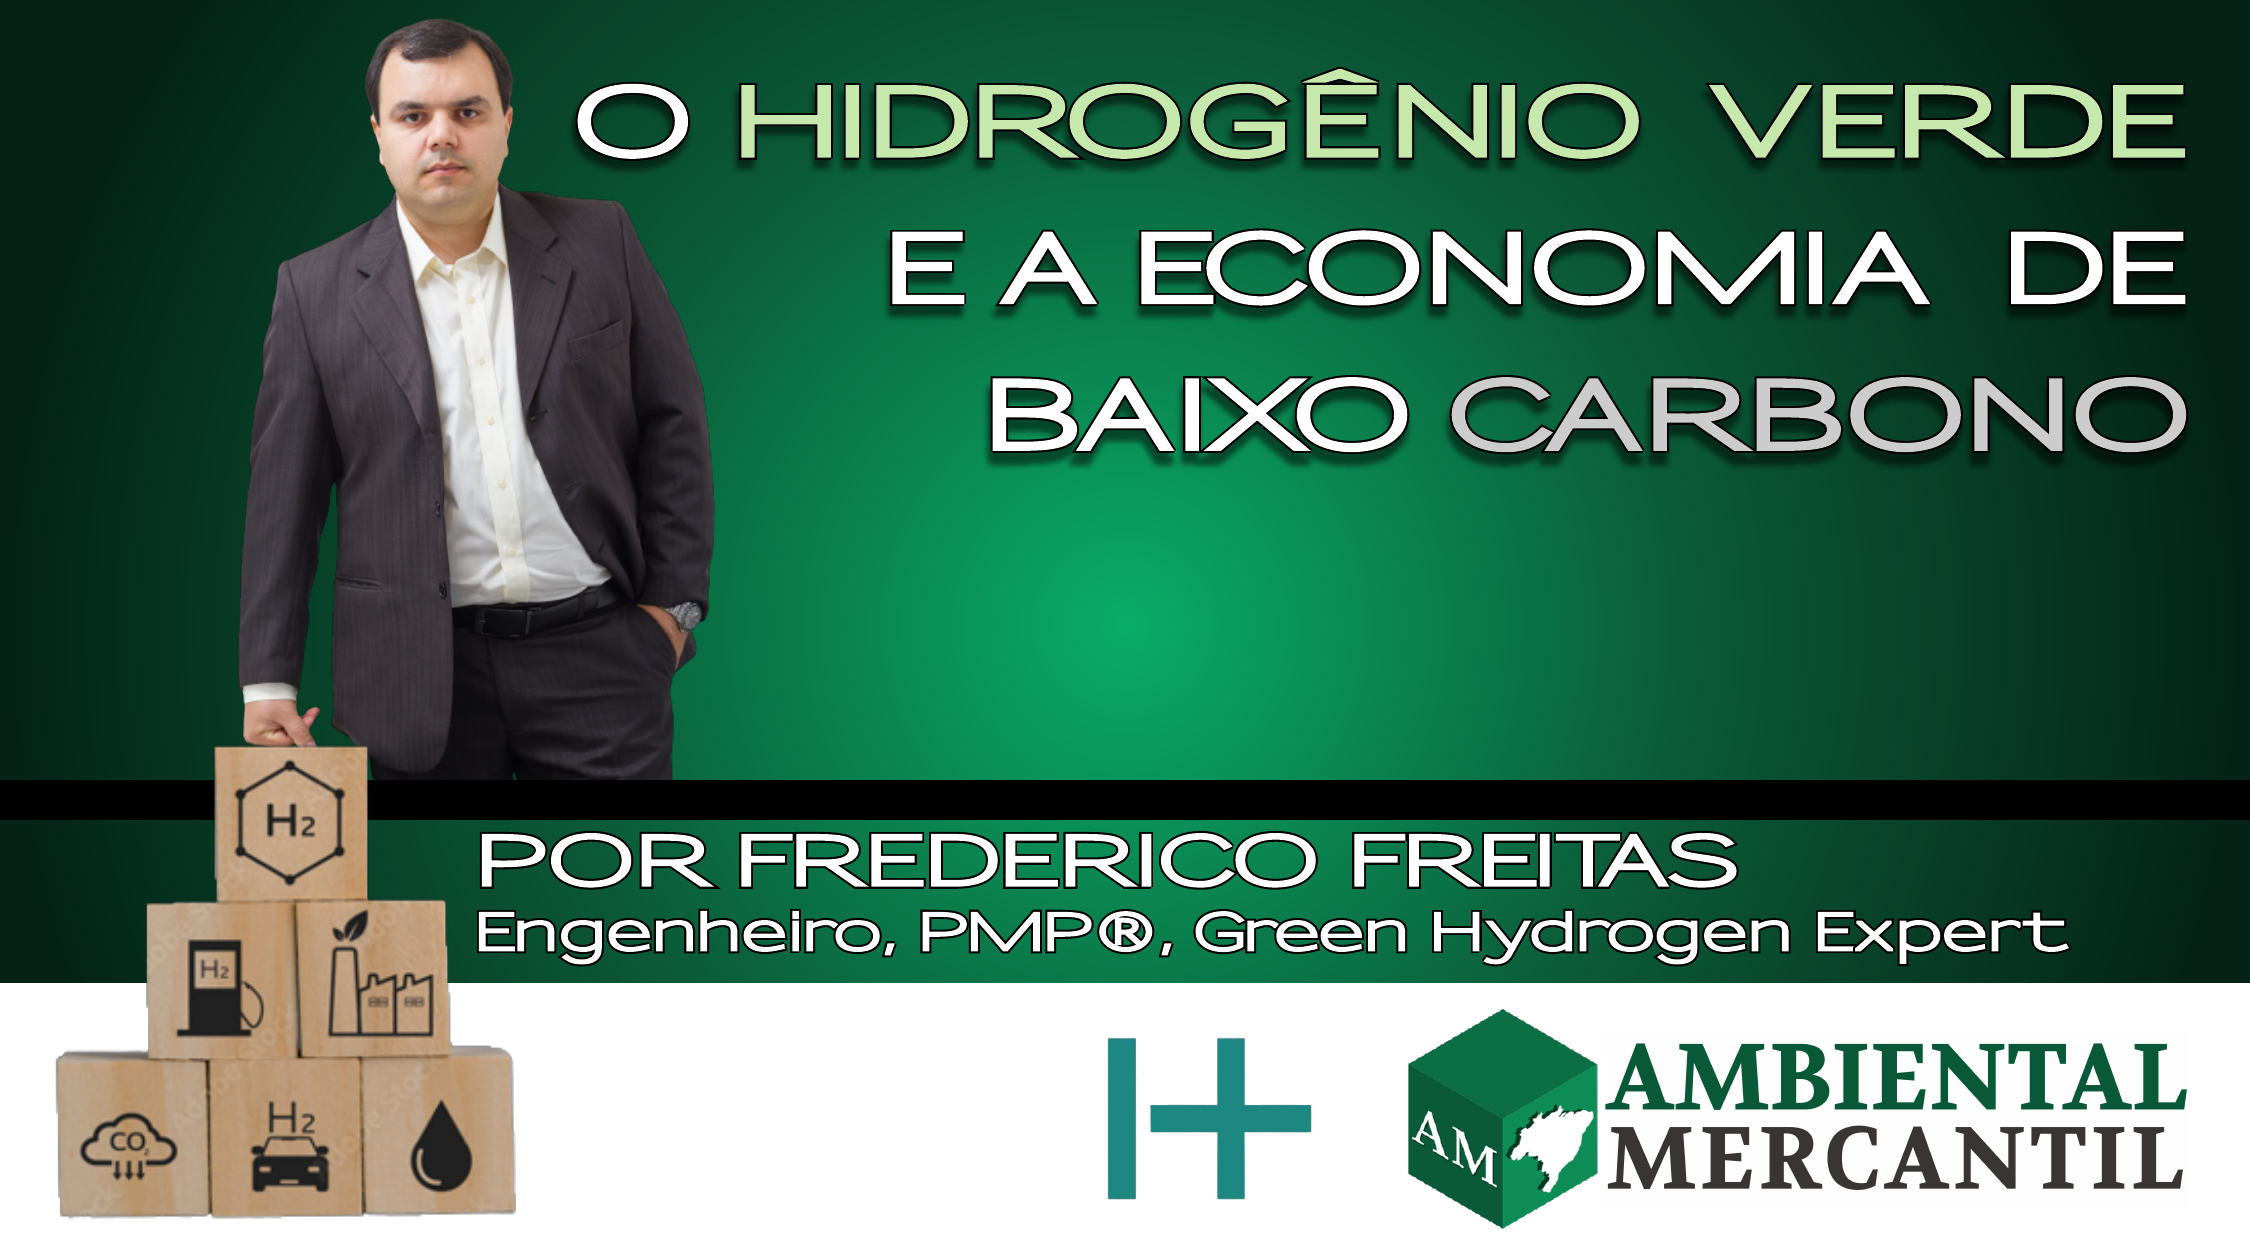 Frederico Freitas é Engenheiro Eletricista, PMP® PMI® (USA) e PM4R® pelo BID, e escreve periodicamente como colunista para o canal AMBIENTAL MERCANTIL.